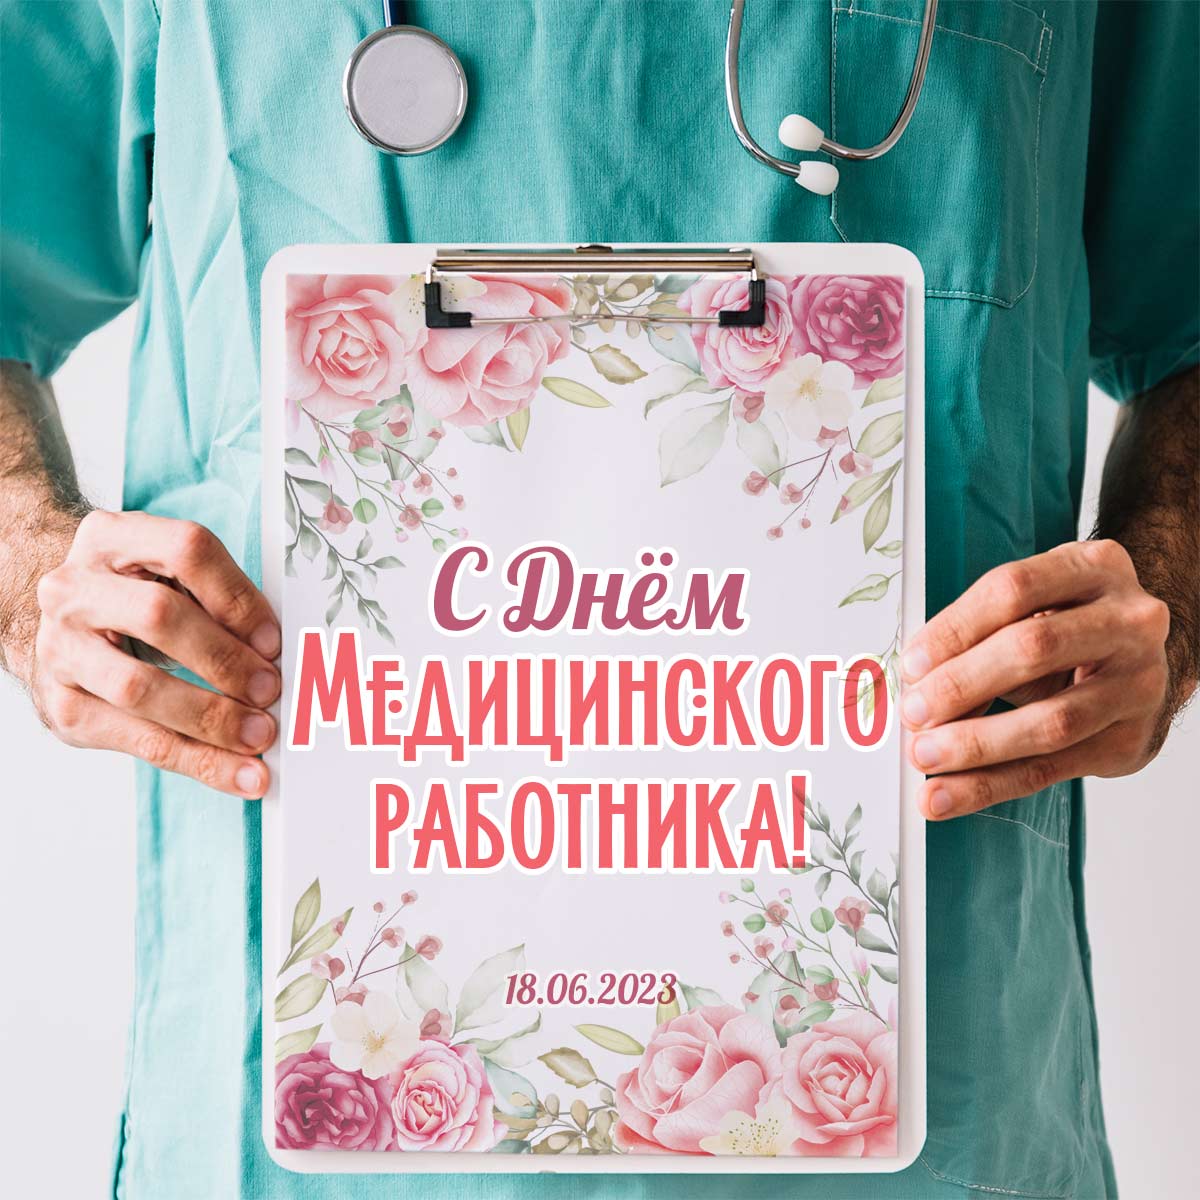 Всех работников медицины поздравляю с проф праздником - Днём медика!